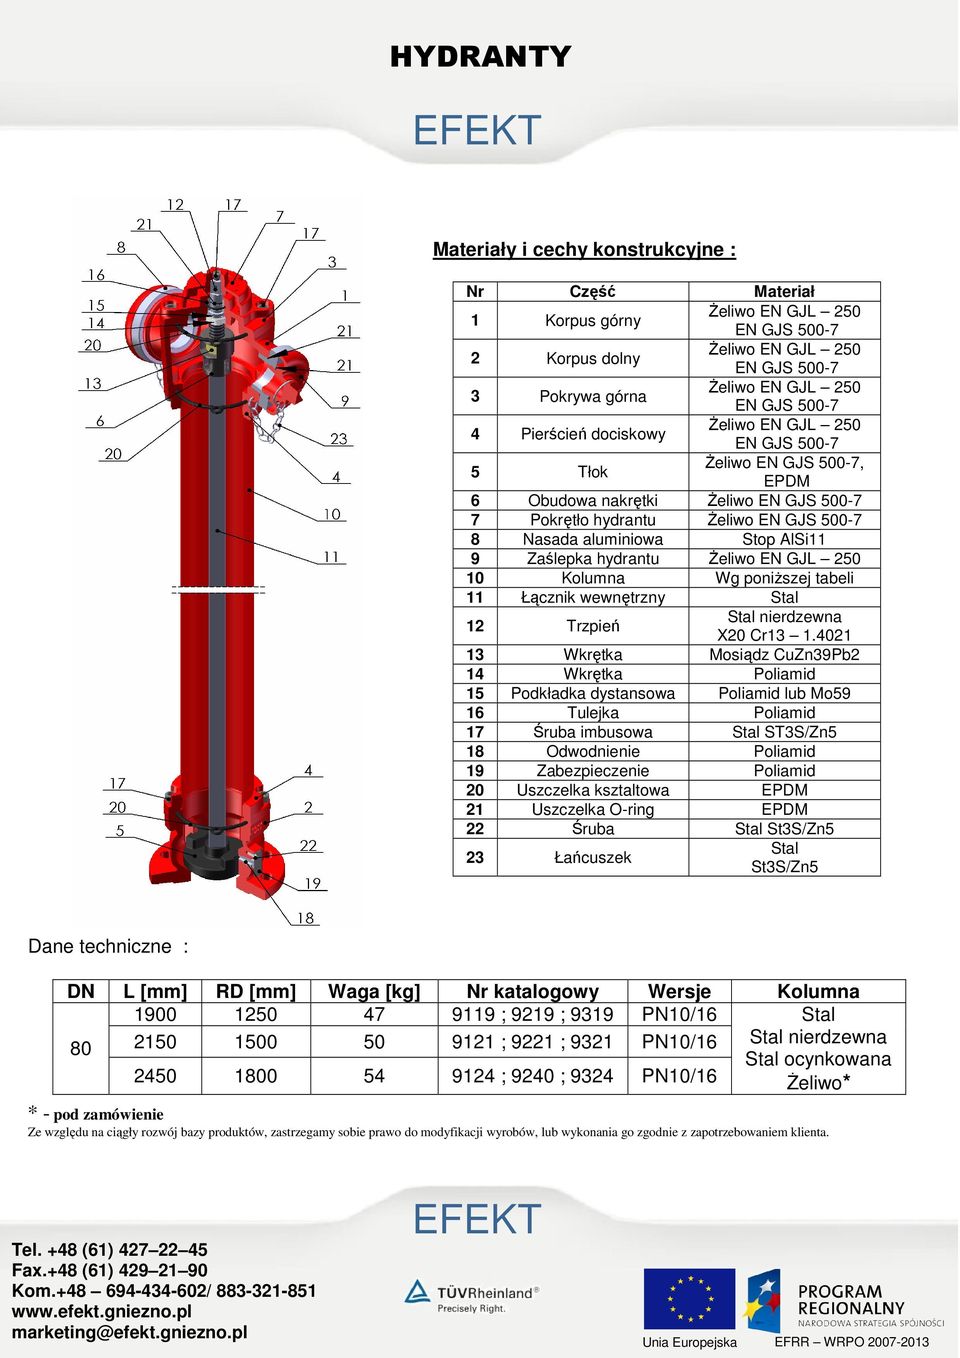 Zaślepka hydrantu śeliwo EN GJL 250 10 Kolumna Wg poniŝszej tabeli 11 Łącznik wewnętrzny Stal 12 Trzpień Stal nierdzewna X20 Cr13 1.